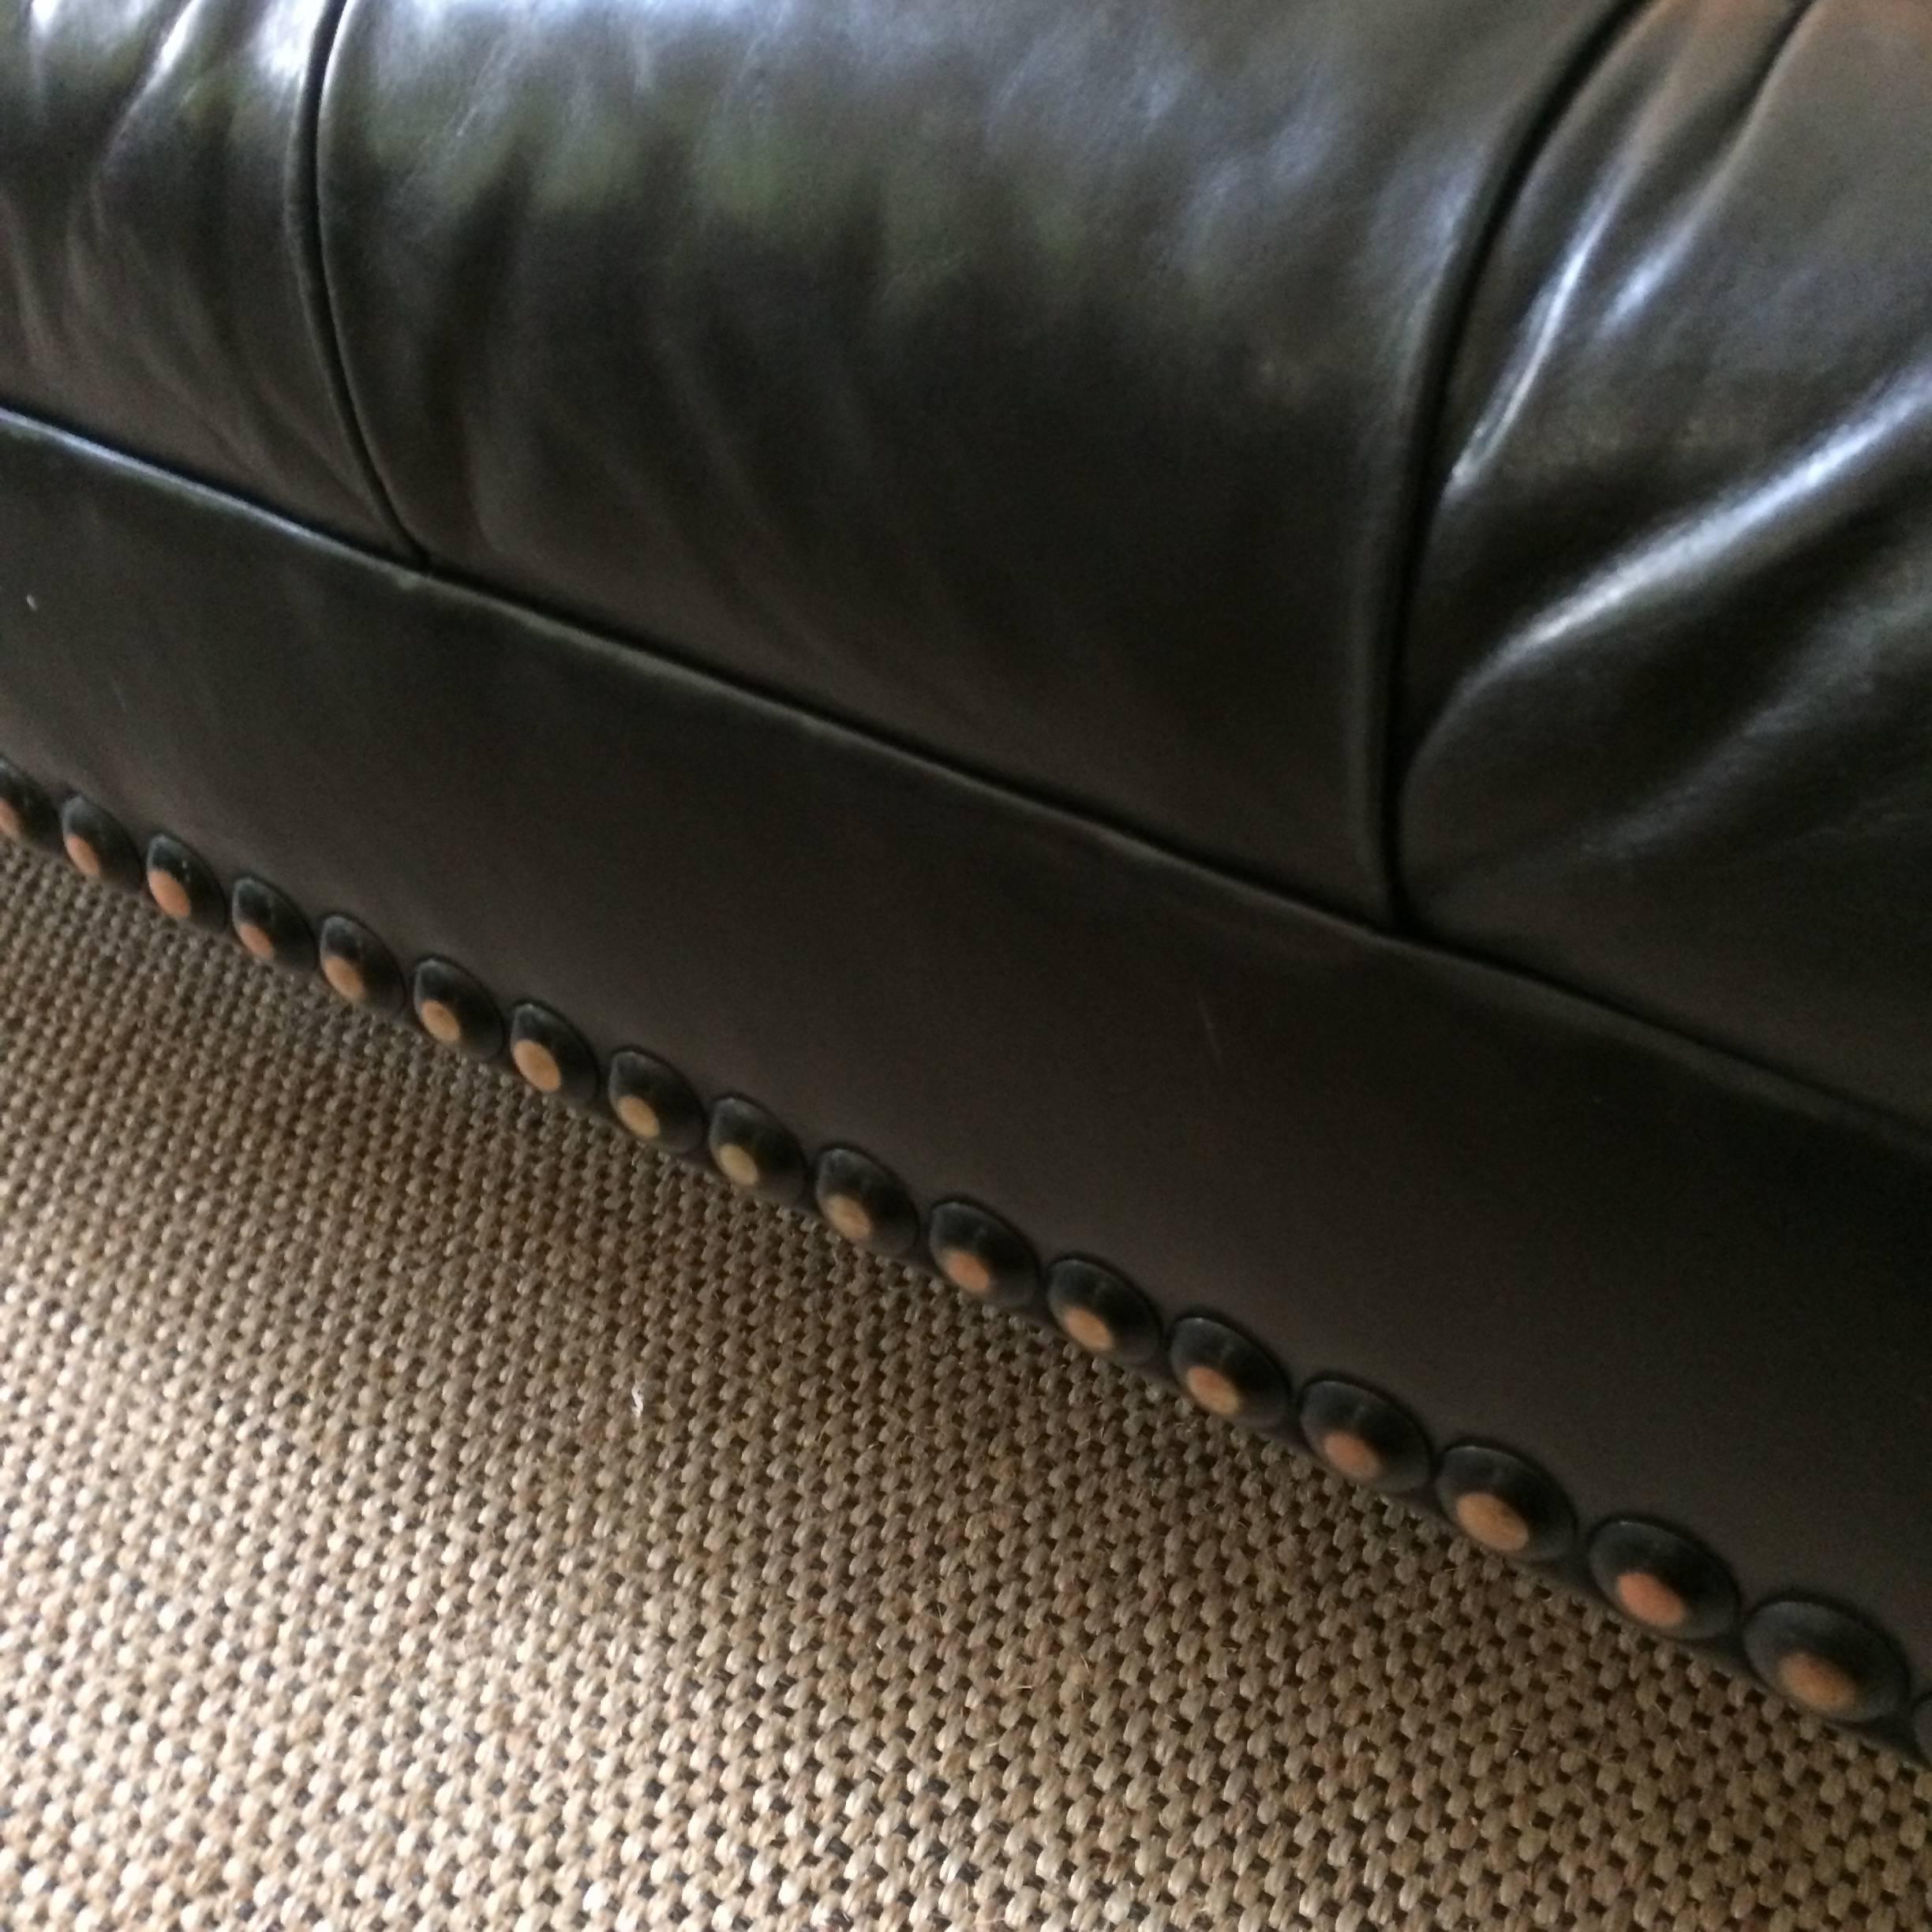 black tufted leather sofa